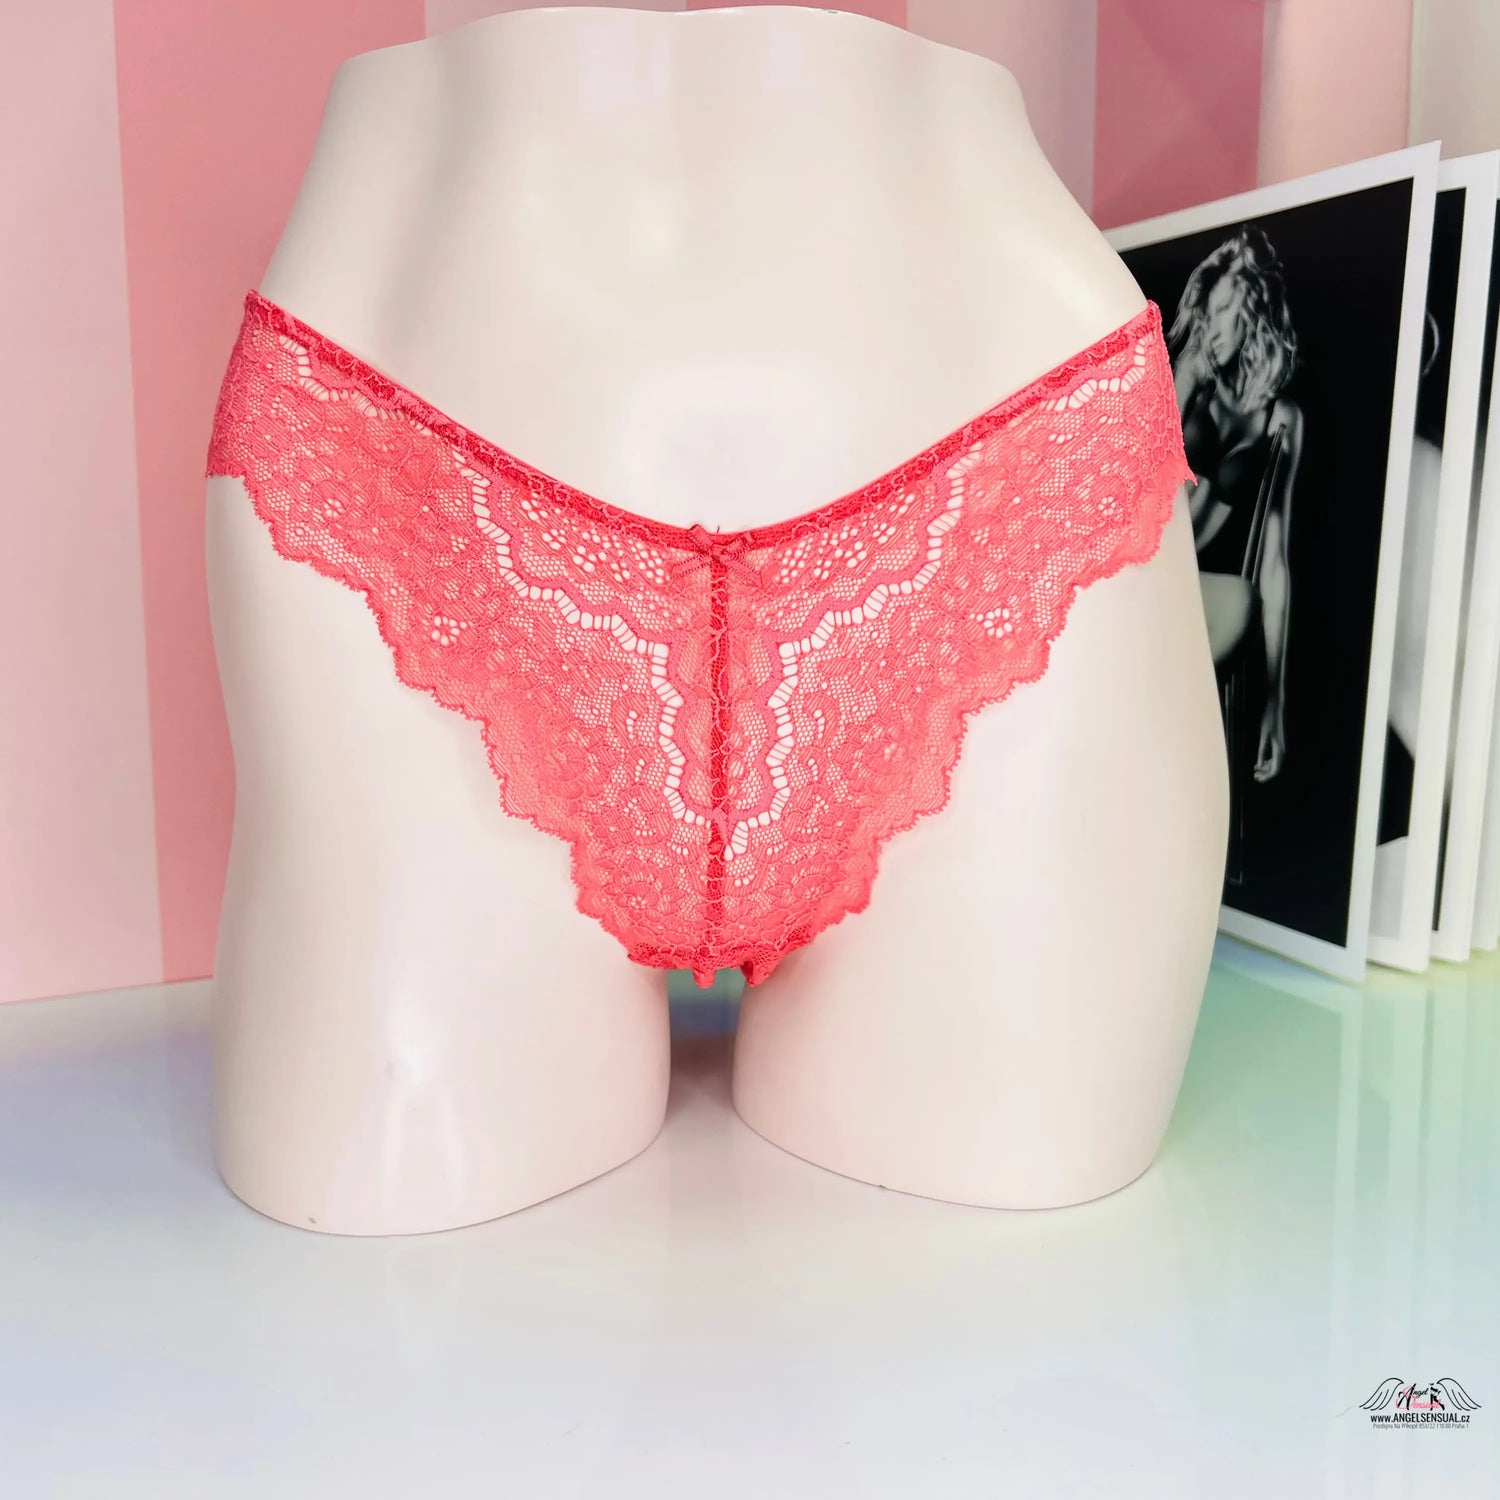 Krajkové kalhotky s vyšším pasem - Růžová / M / Nové se štítky - Kalhotky Victoria’s Secret